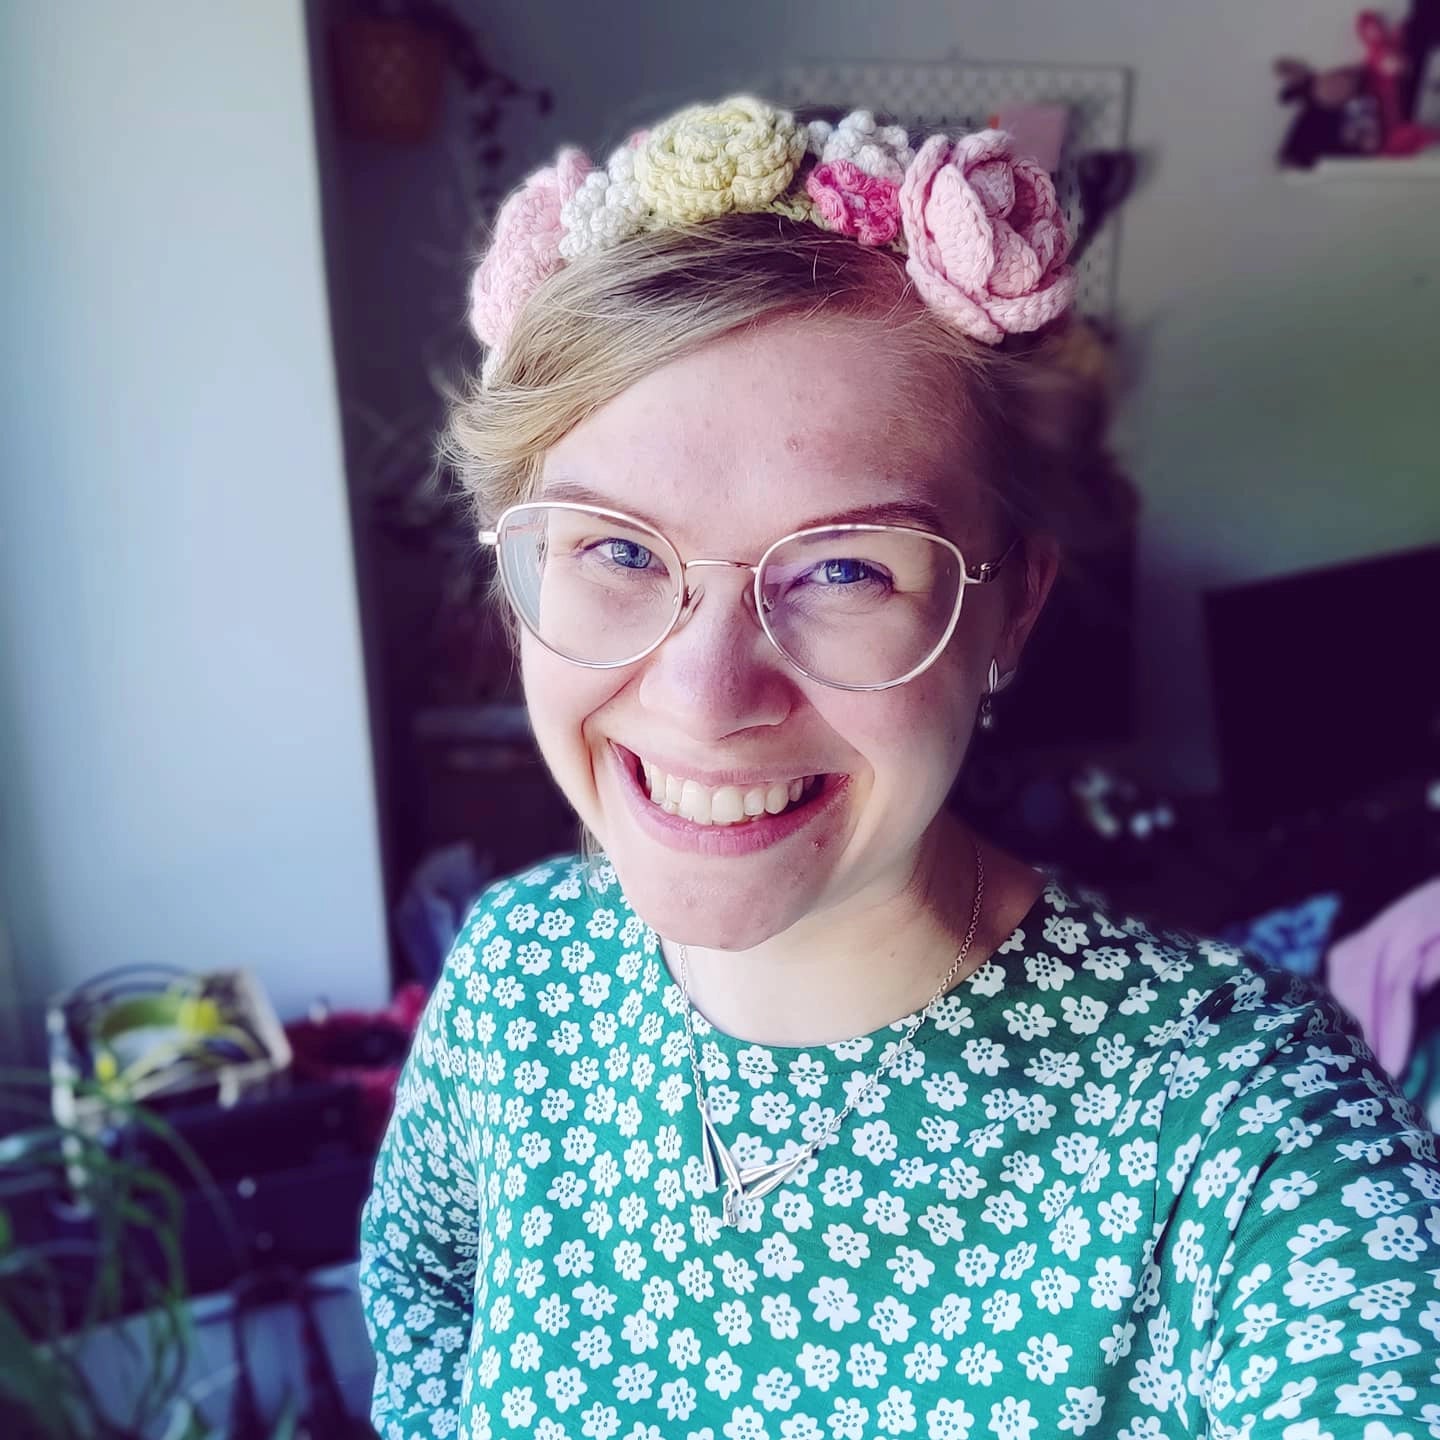 Veronica Lönnqvist crochet amigurumi designer